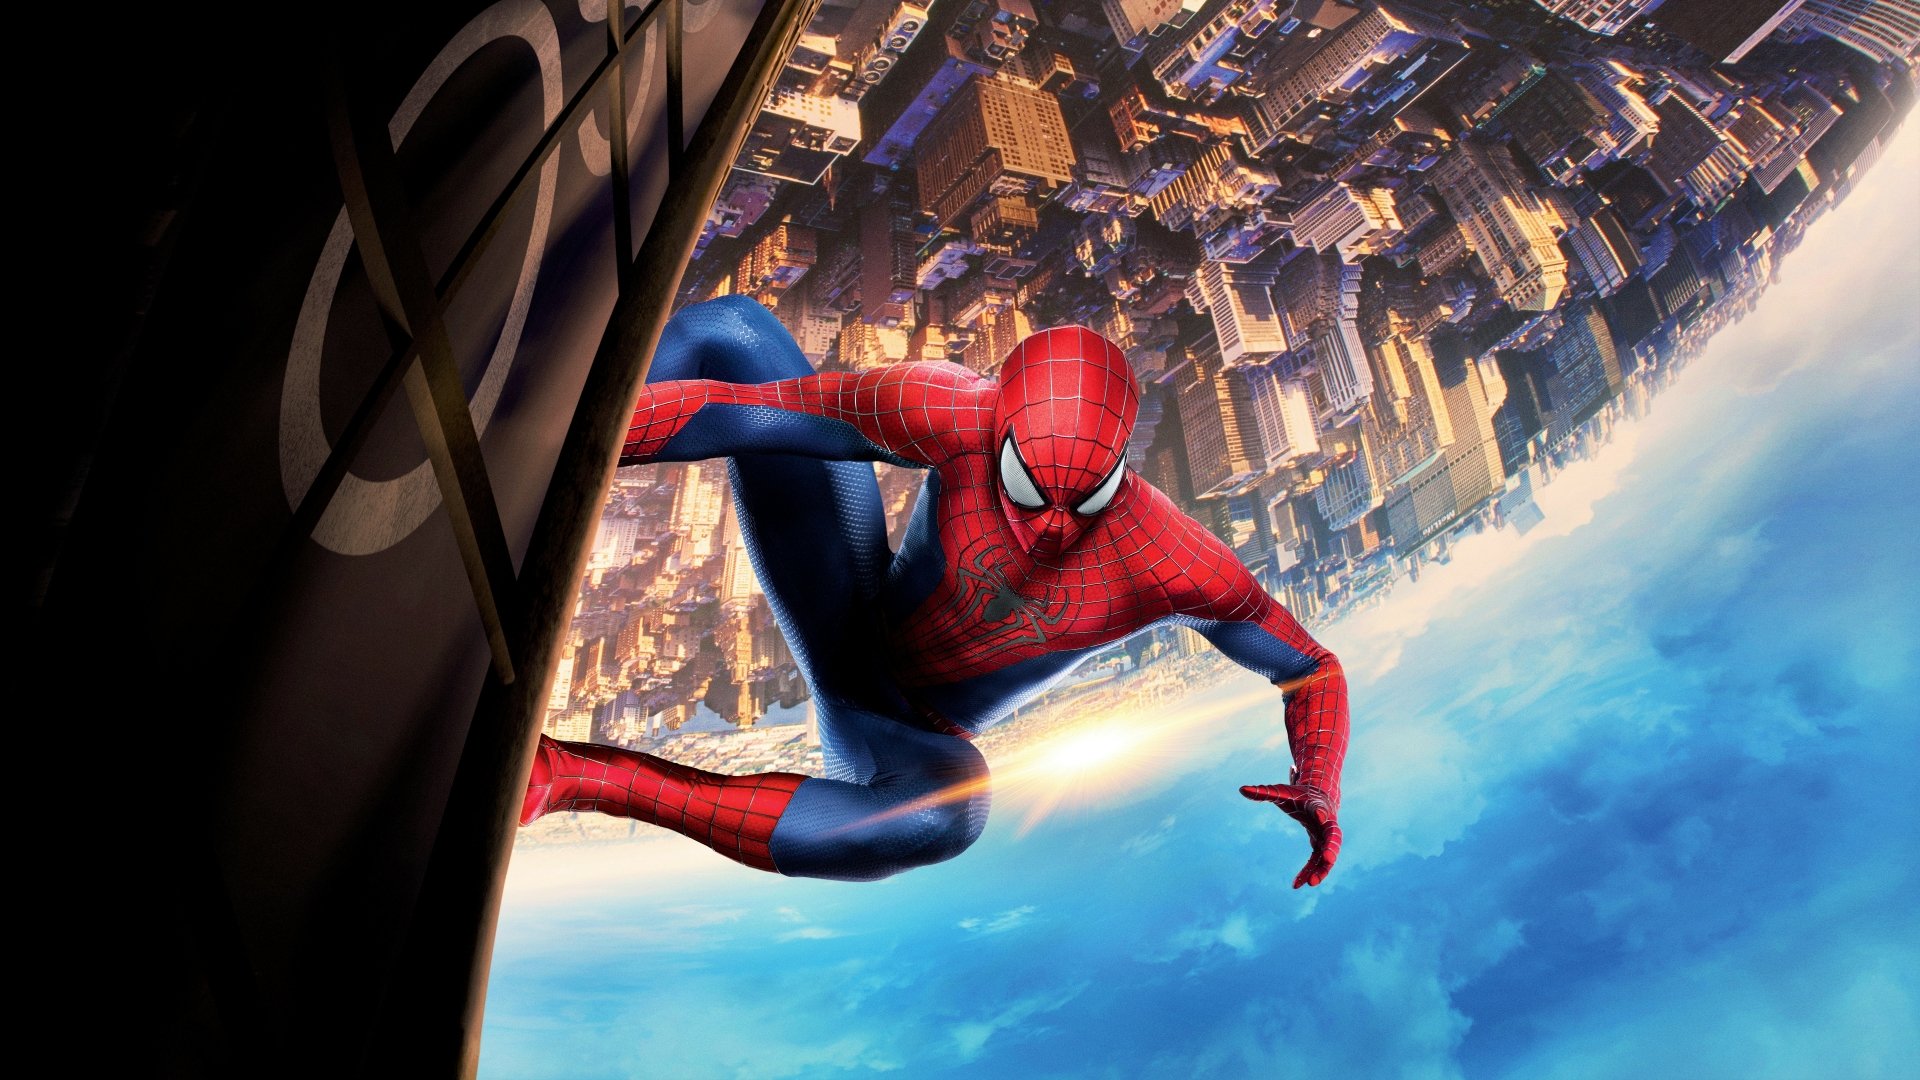 Download Spider Man Movie The Amazing Spider Man 2 8k Ultra Hd Wallpaper